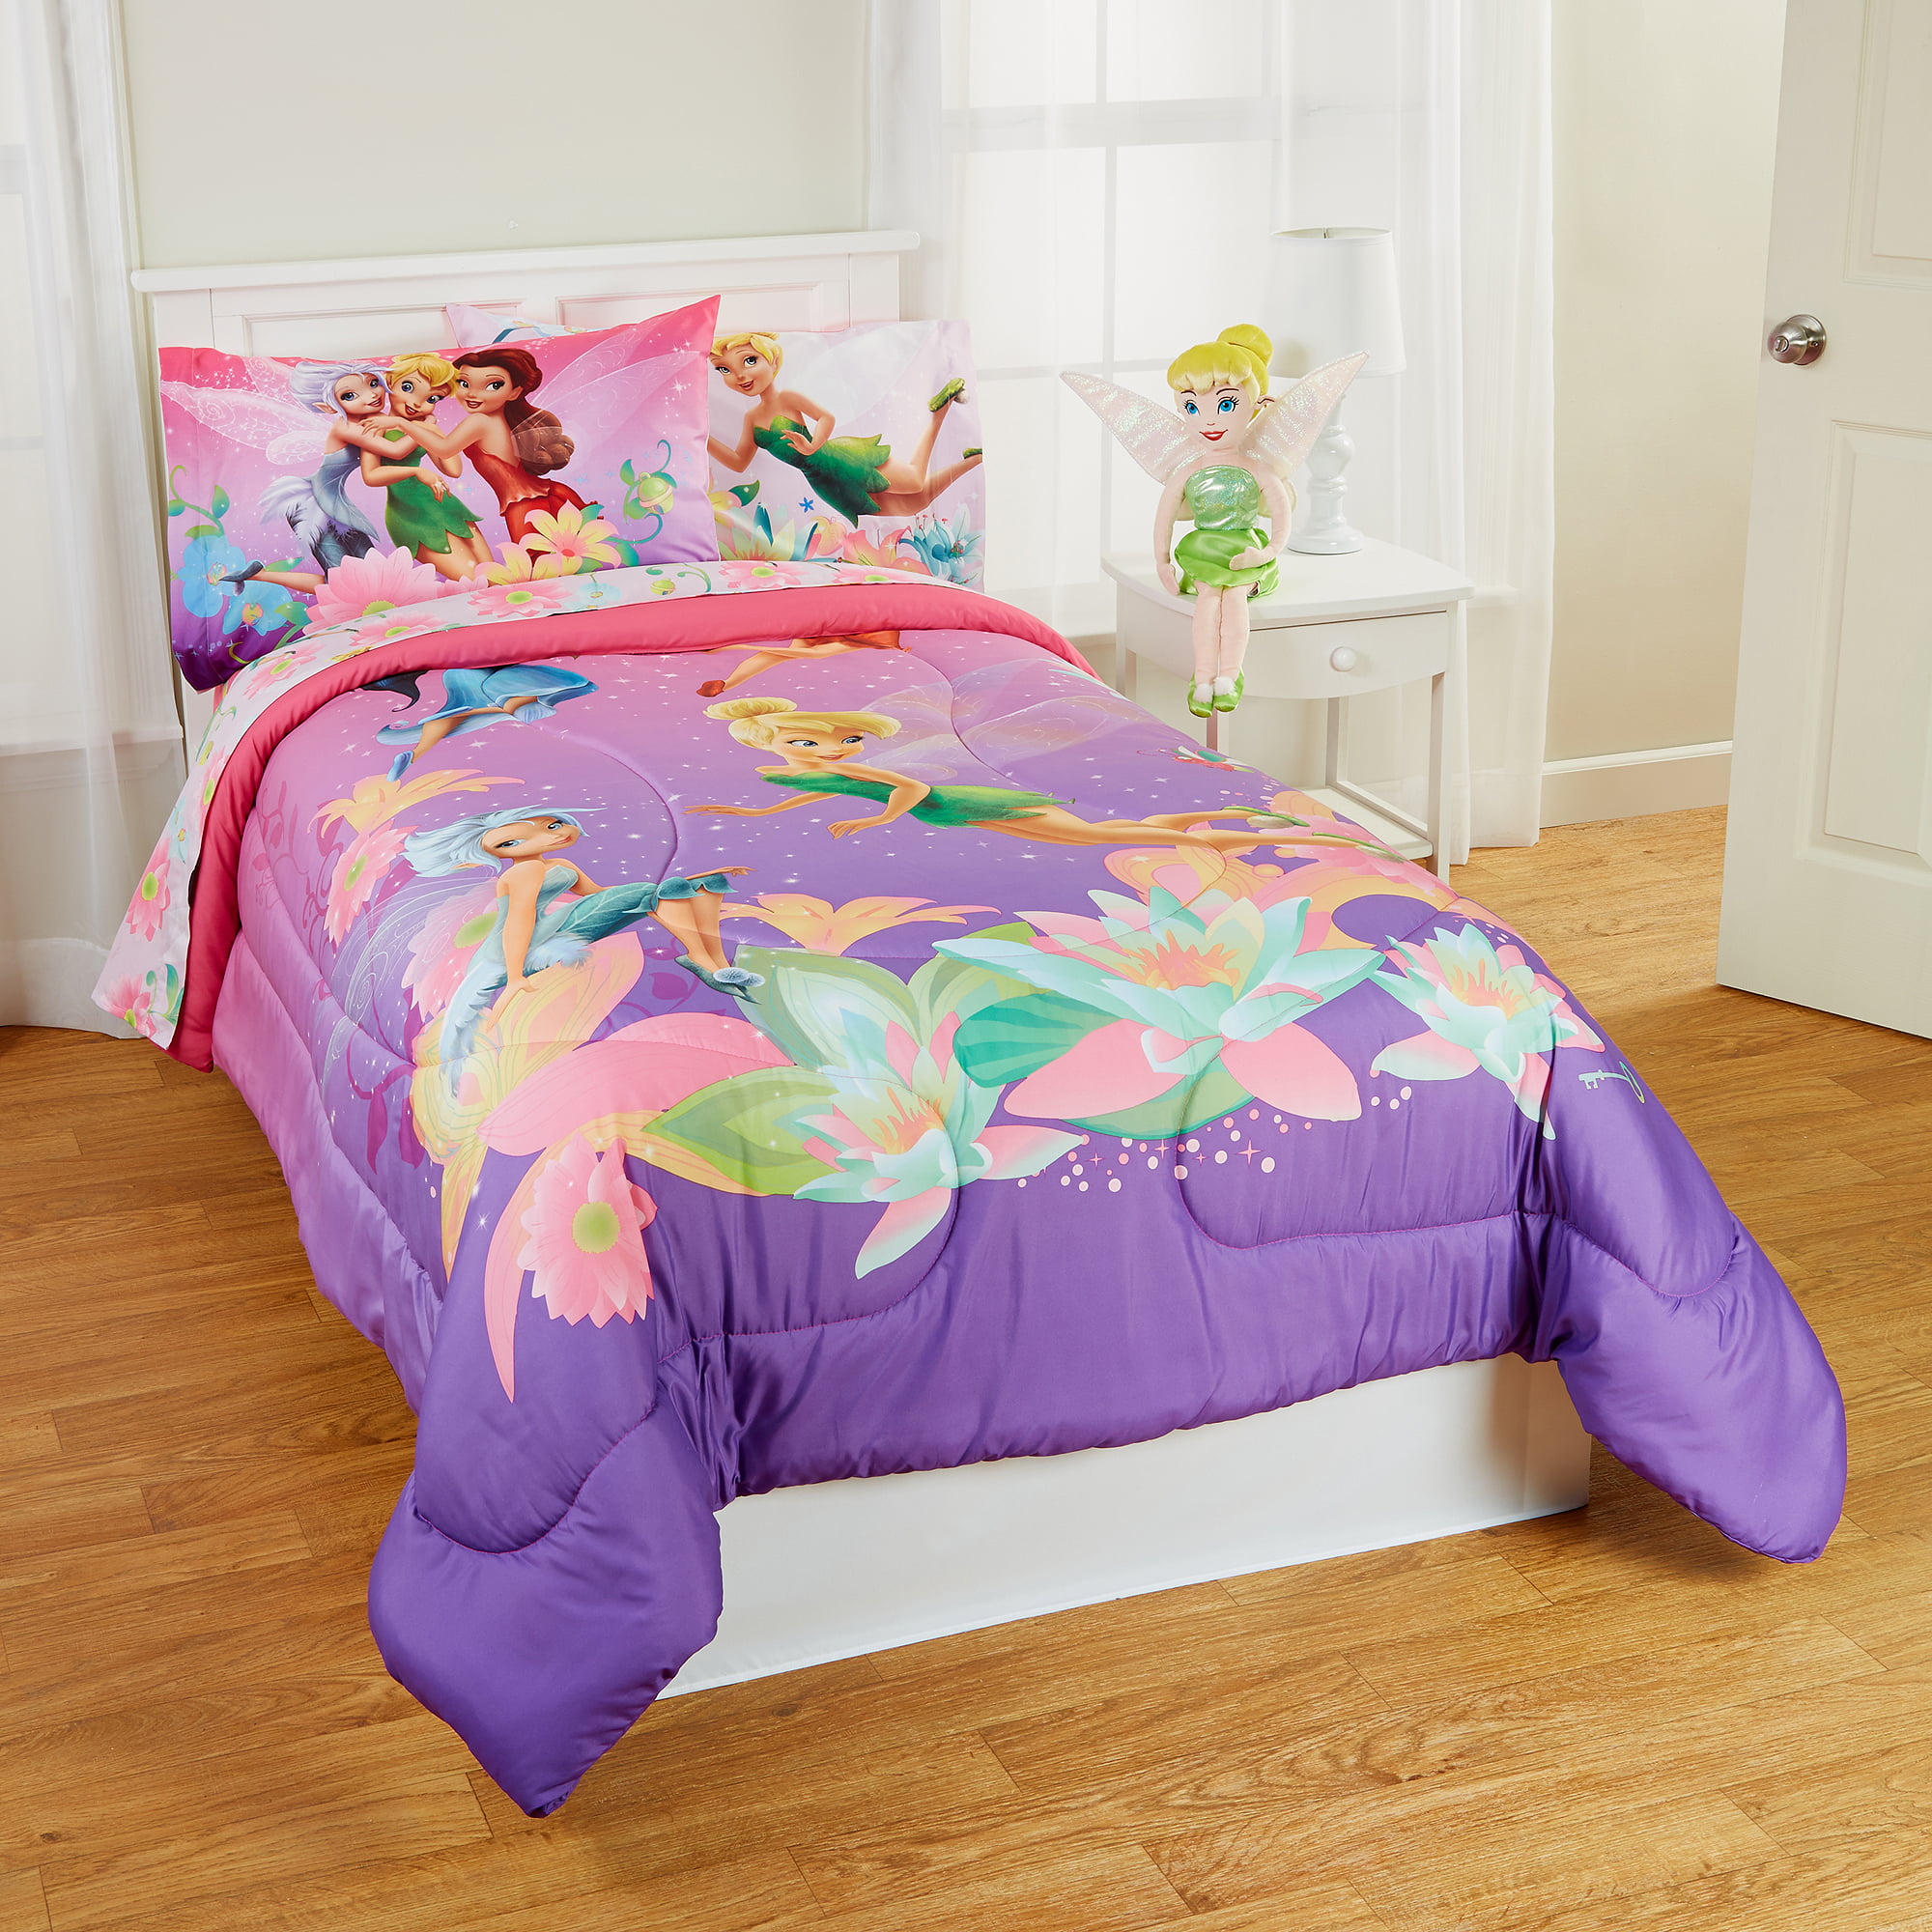 Beautiful Tinkerbell Bedroom Design Ideas For Girls Bedrooms